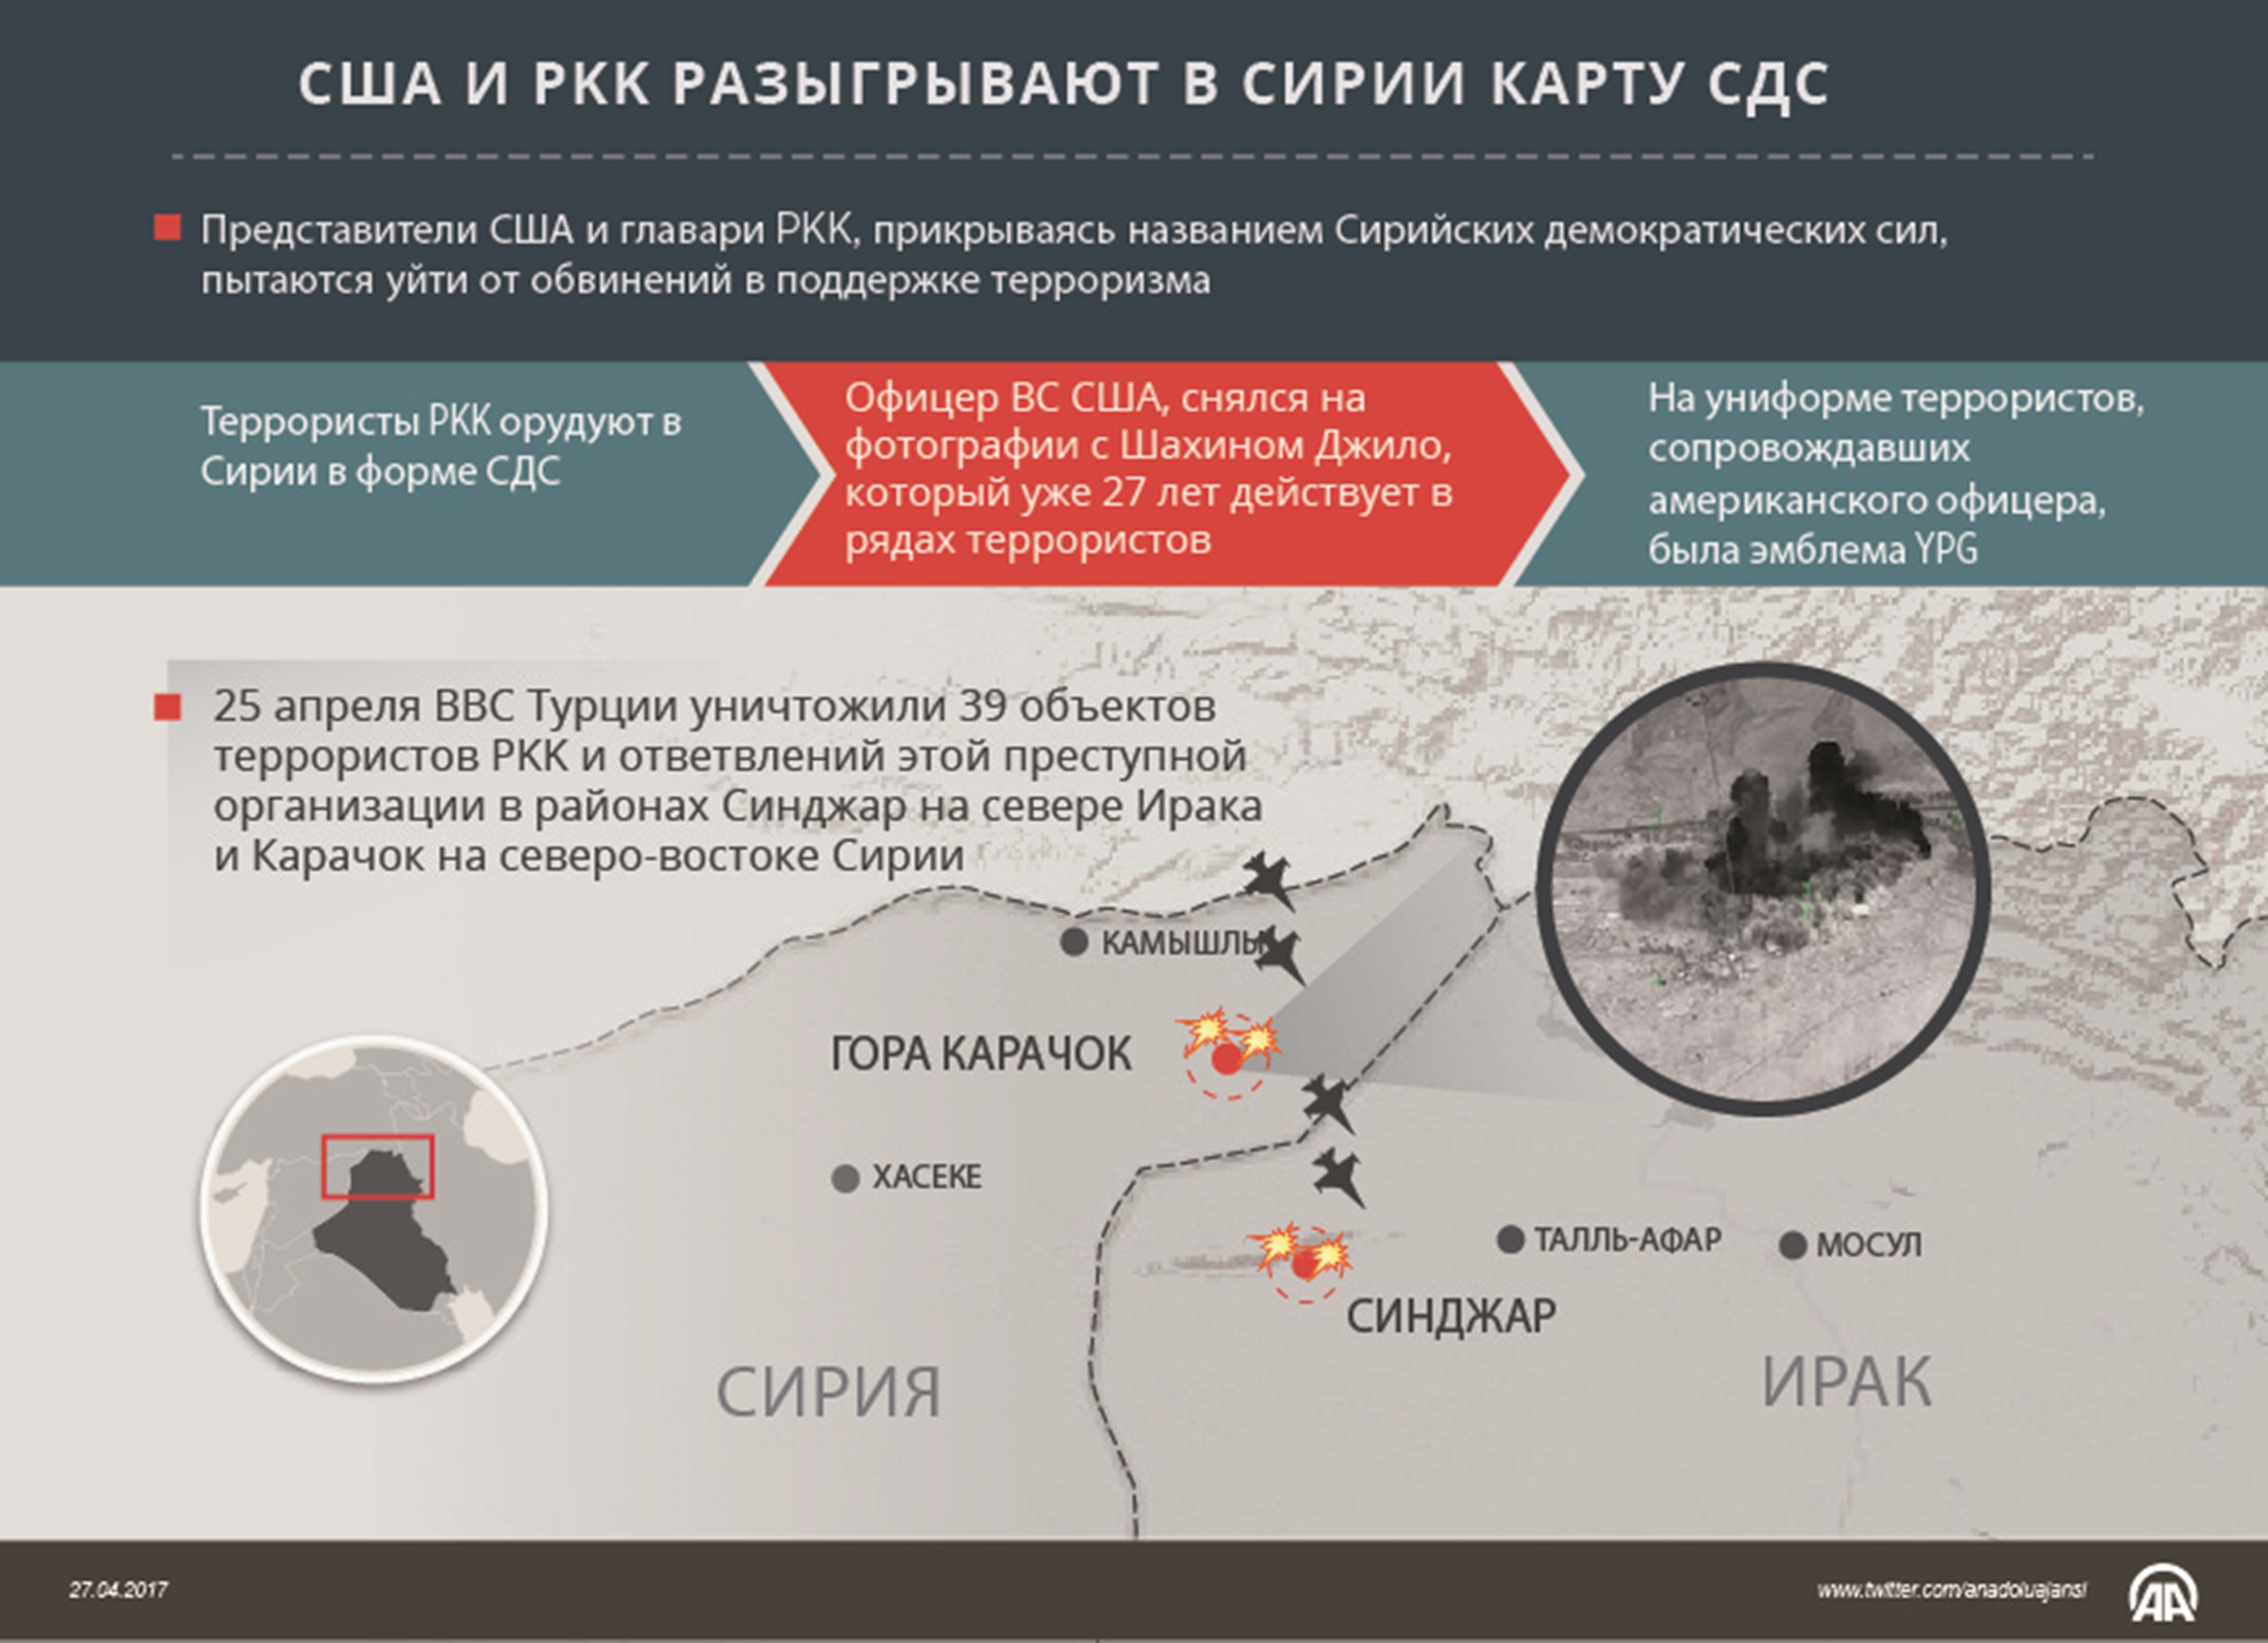 США и PKK разыгрывают в Сирии карту СДС